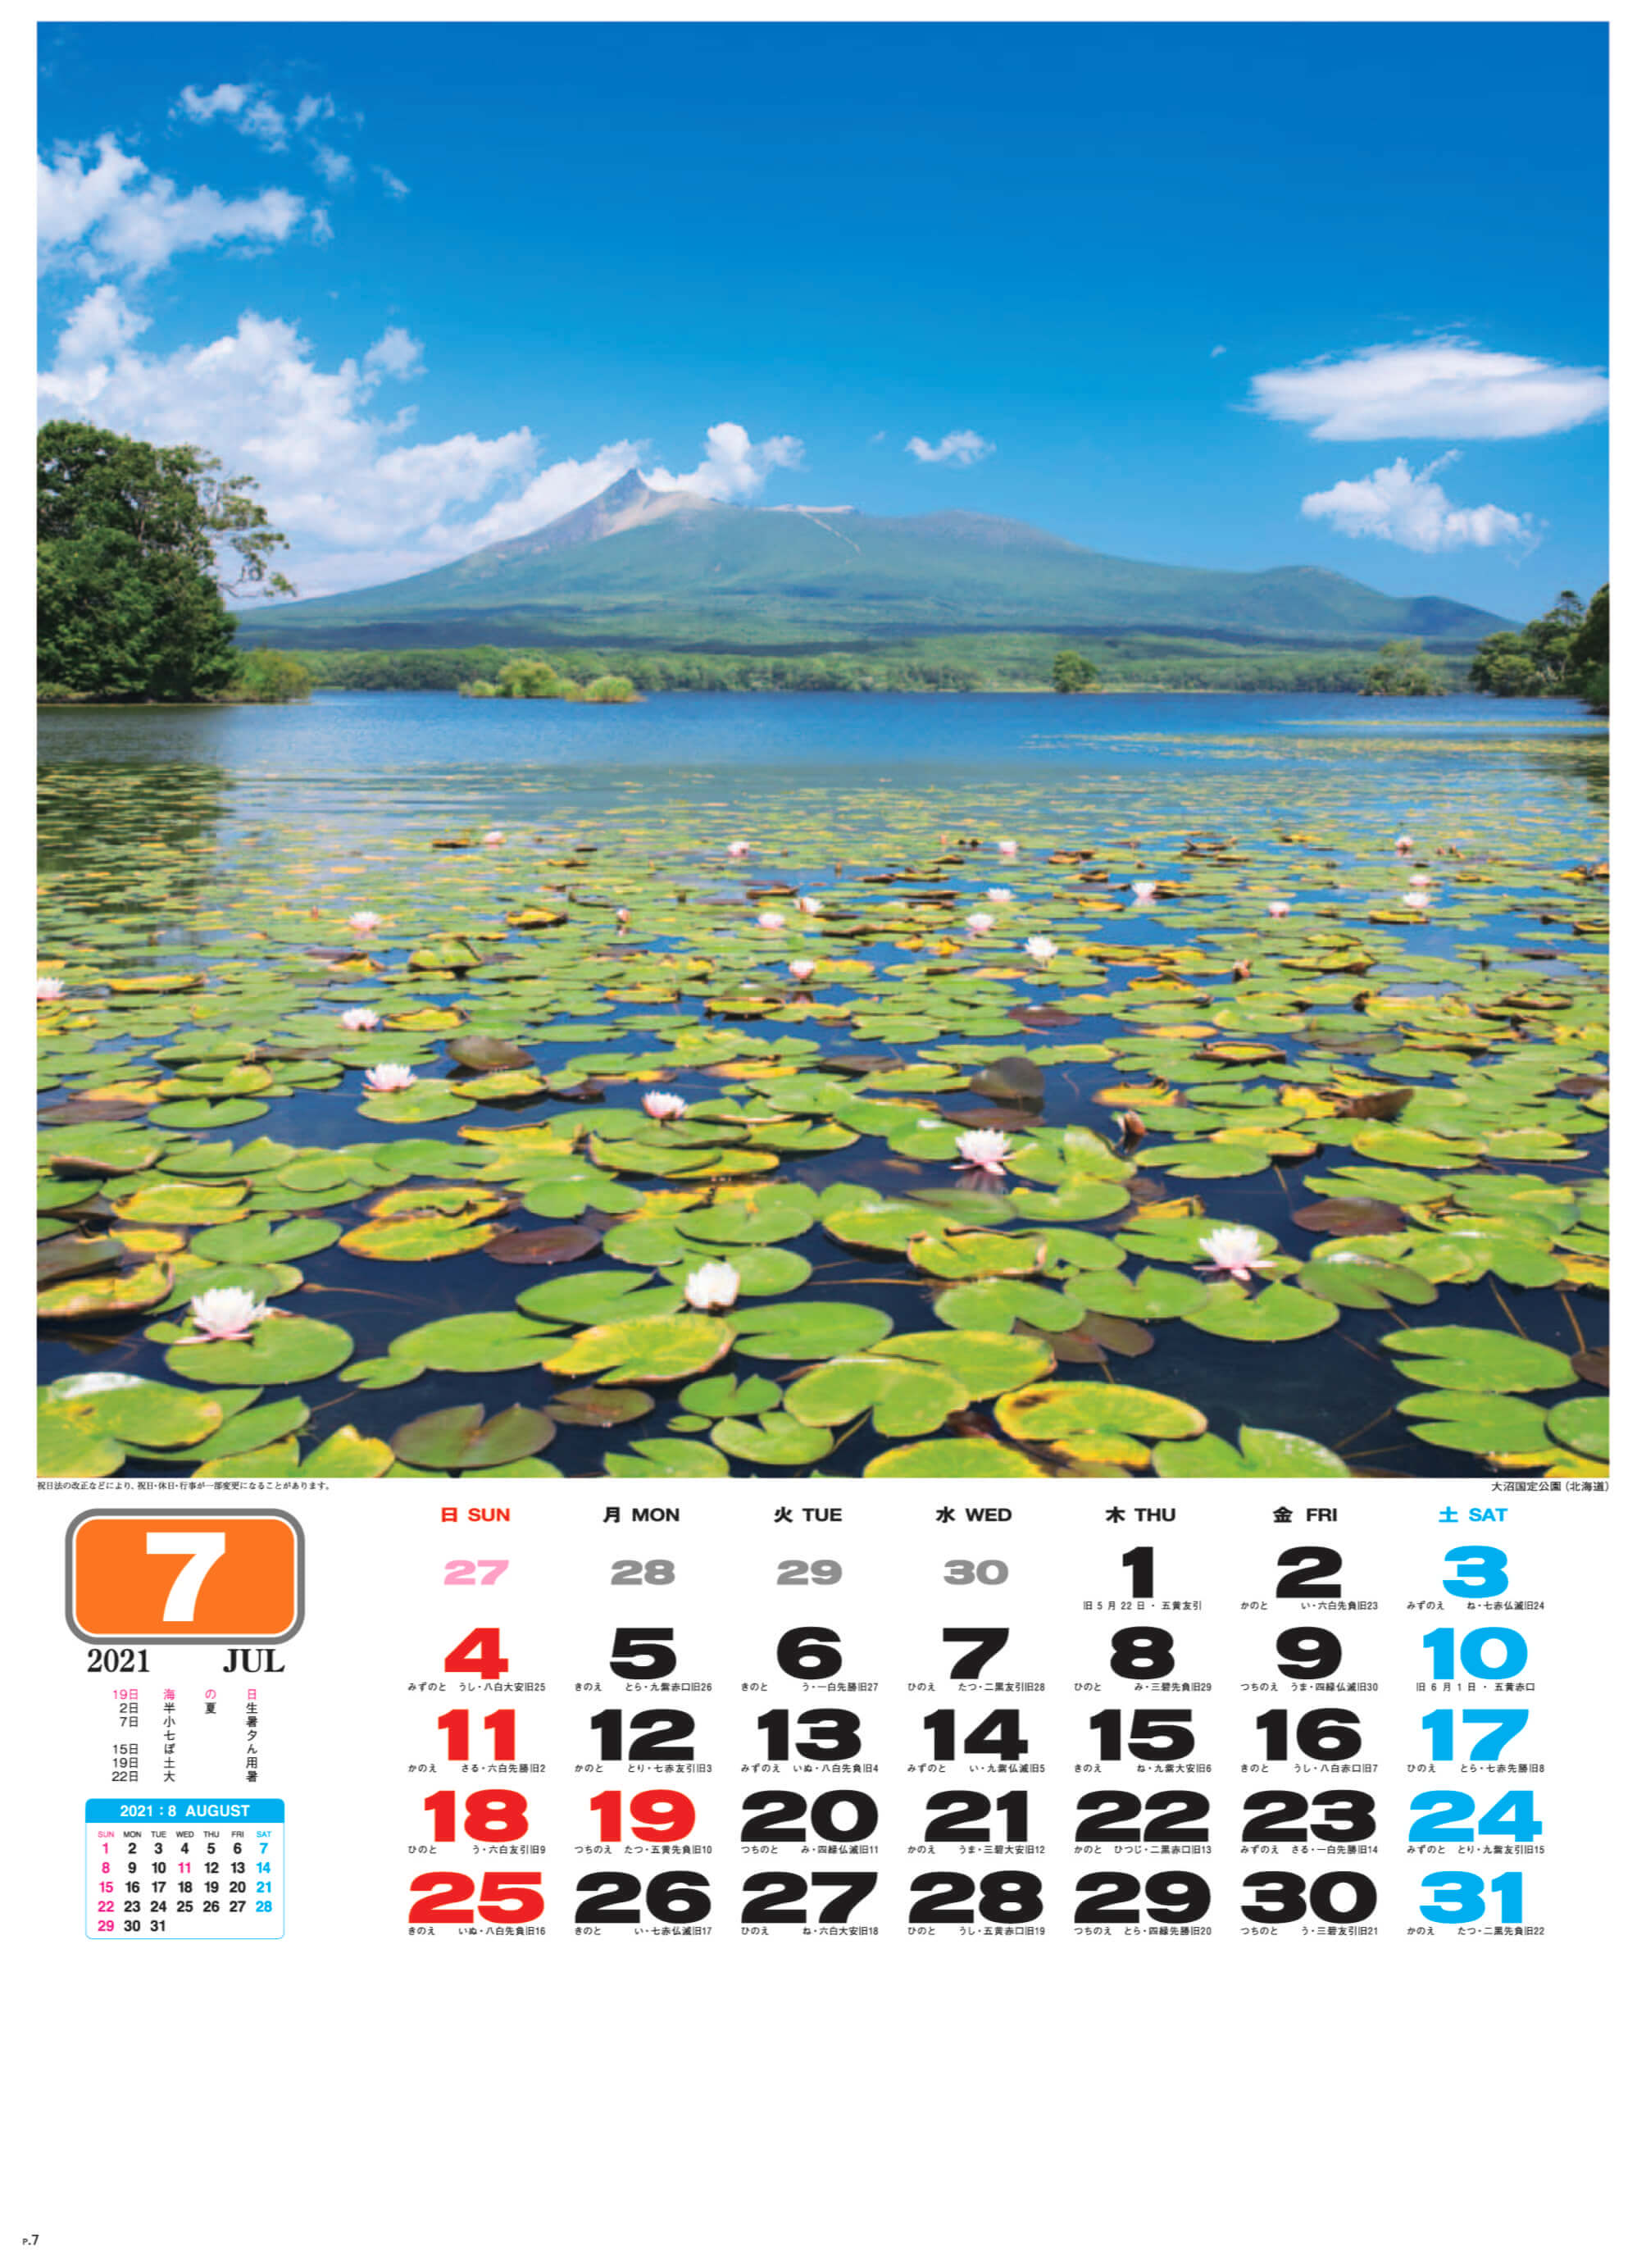 大沼国定公園(北海道) 美しき日本 2021年カレンダーの画像